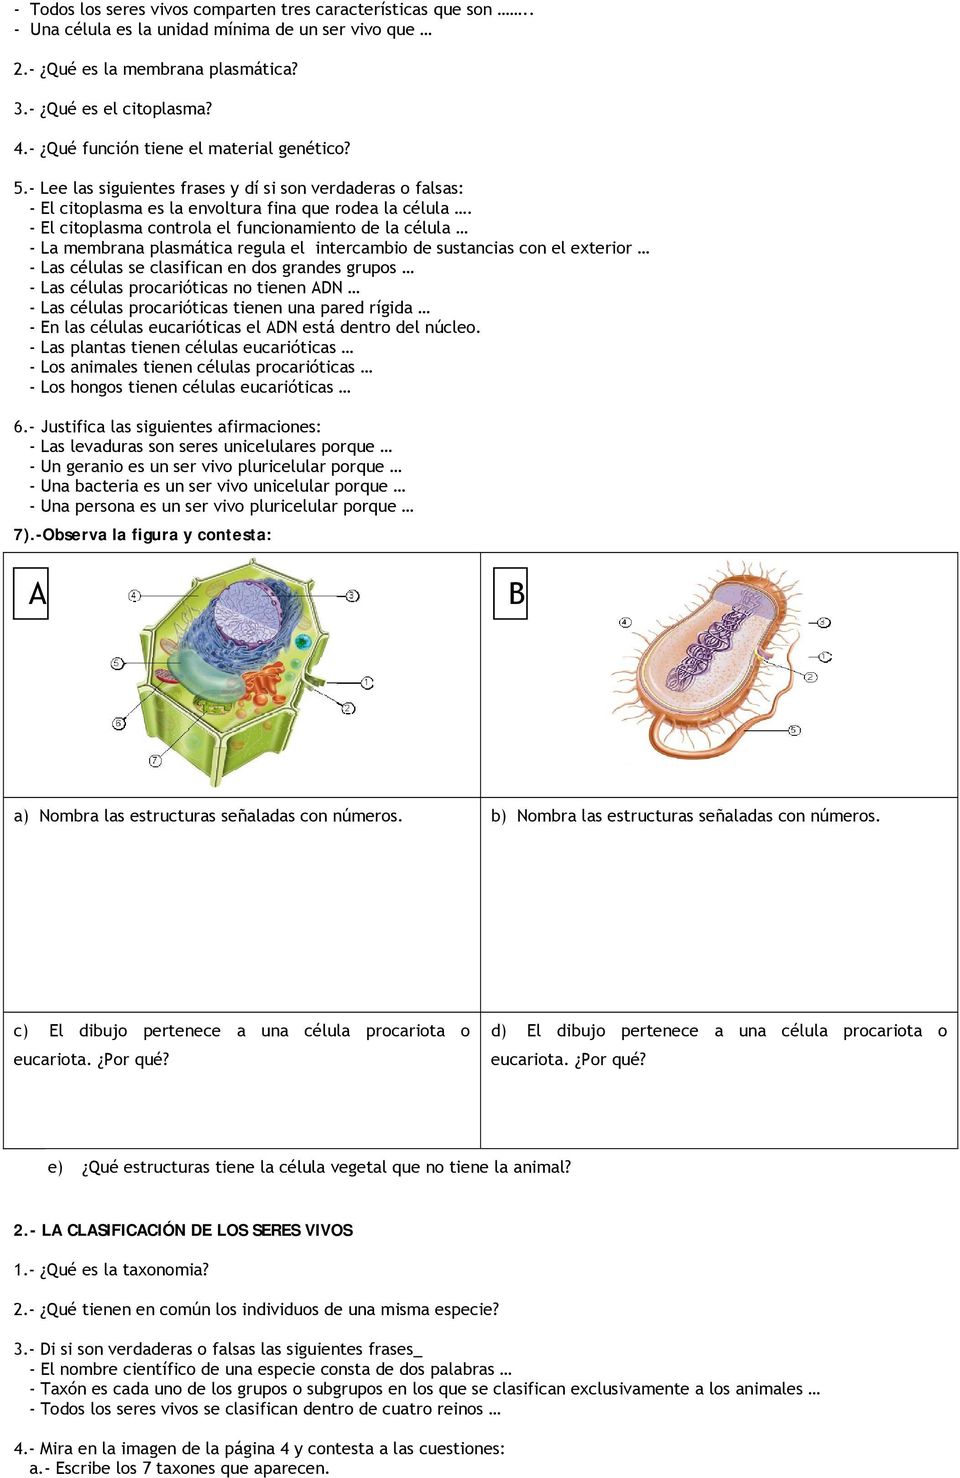 - El citoplasma controla el funcionamiento de la célula - La membrana plasmática regula el intercambio de sustancias con el exterior - Las células se clasifican en dos grandes grupos - Las células